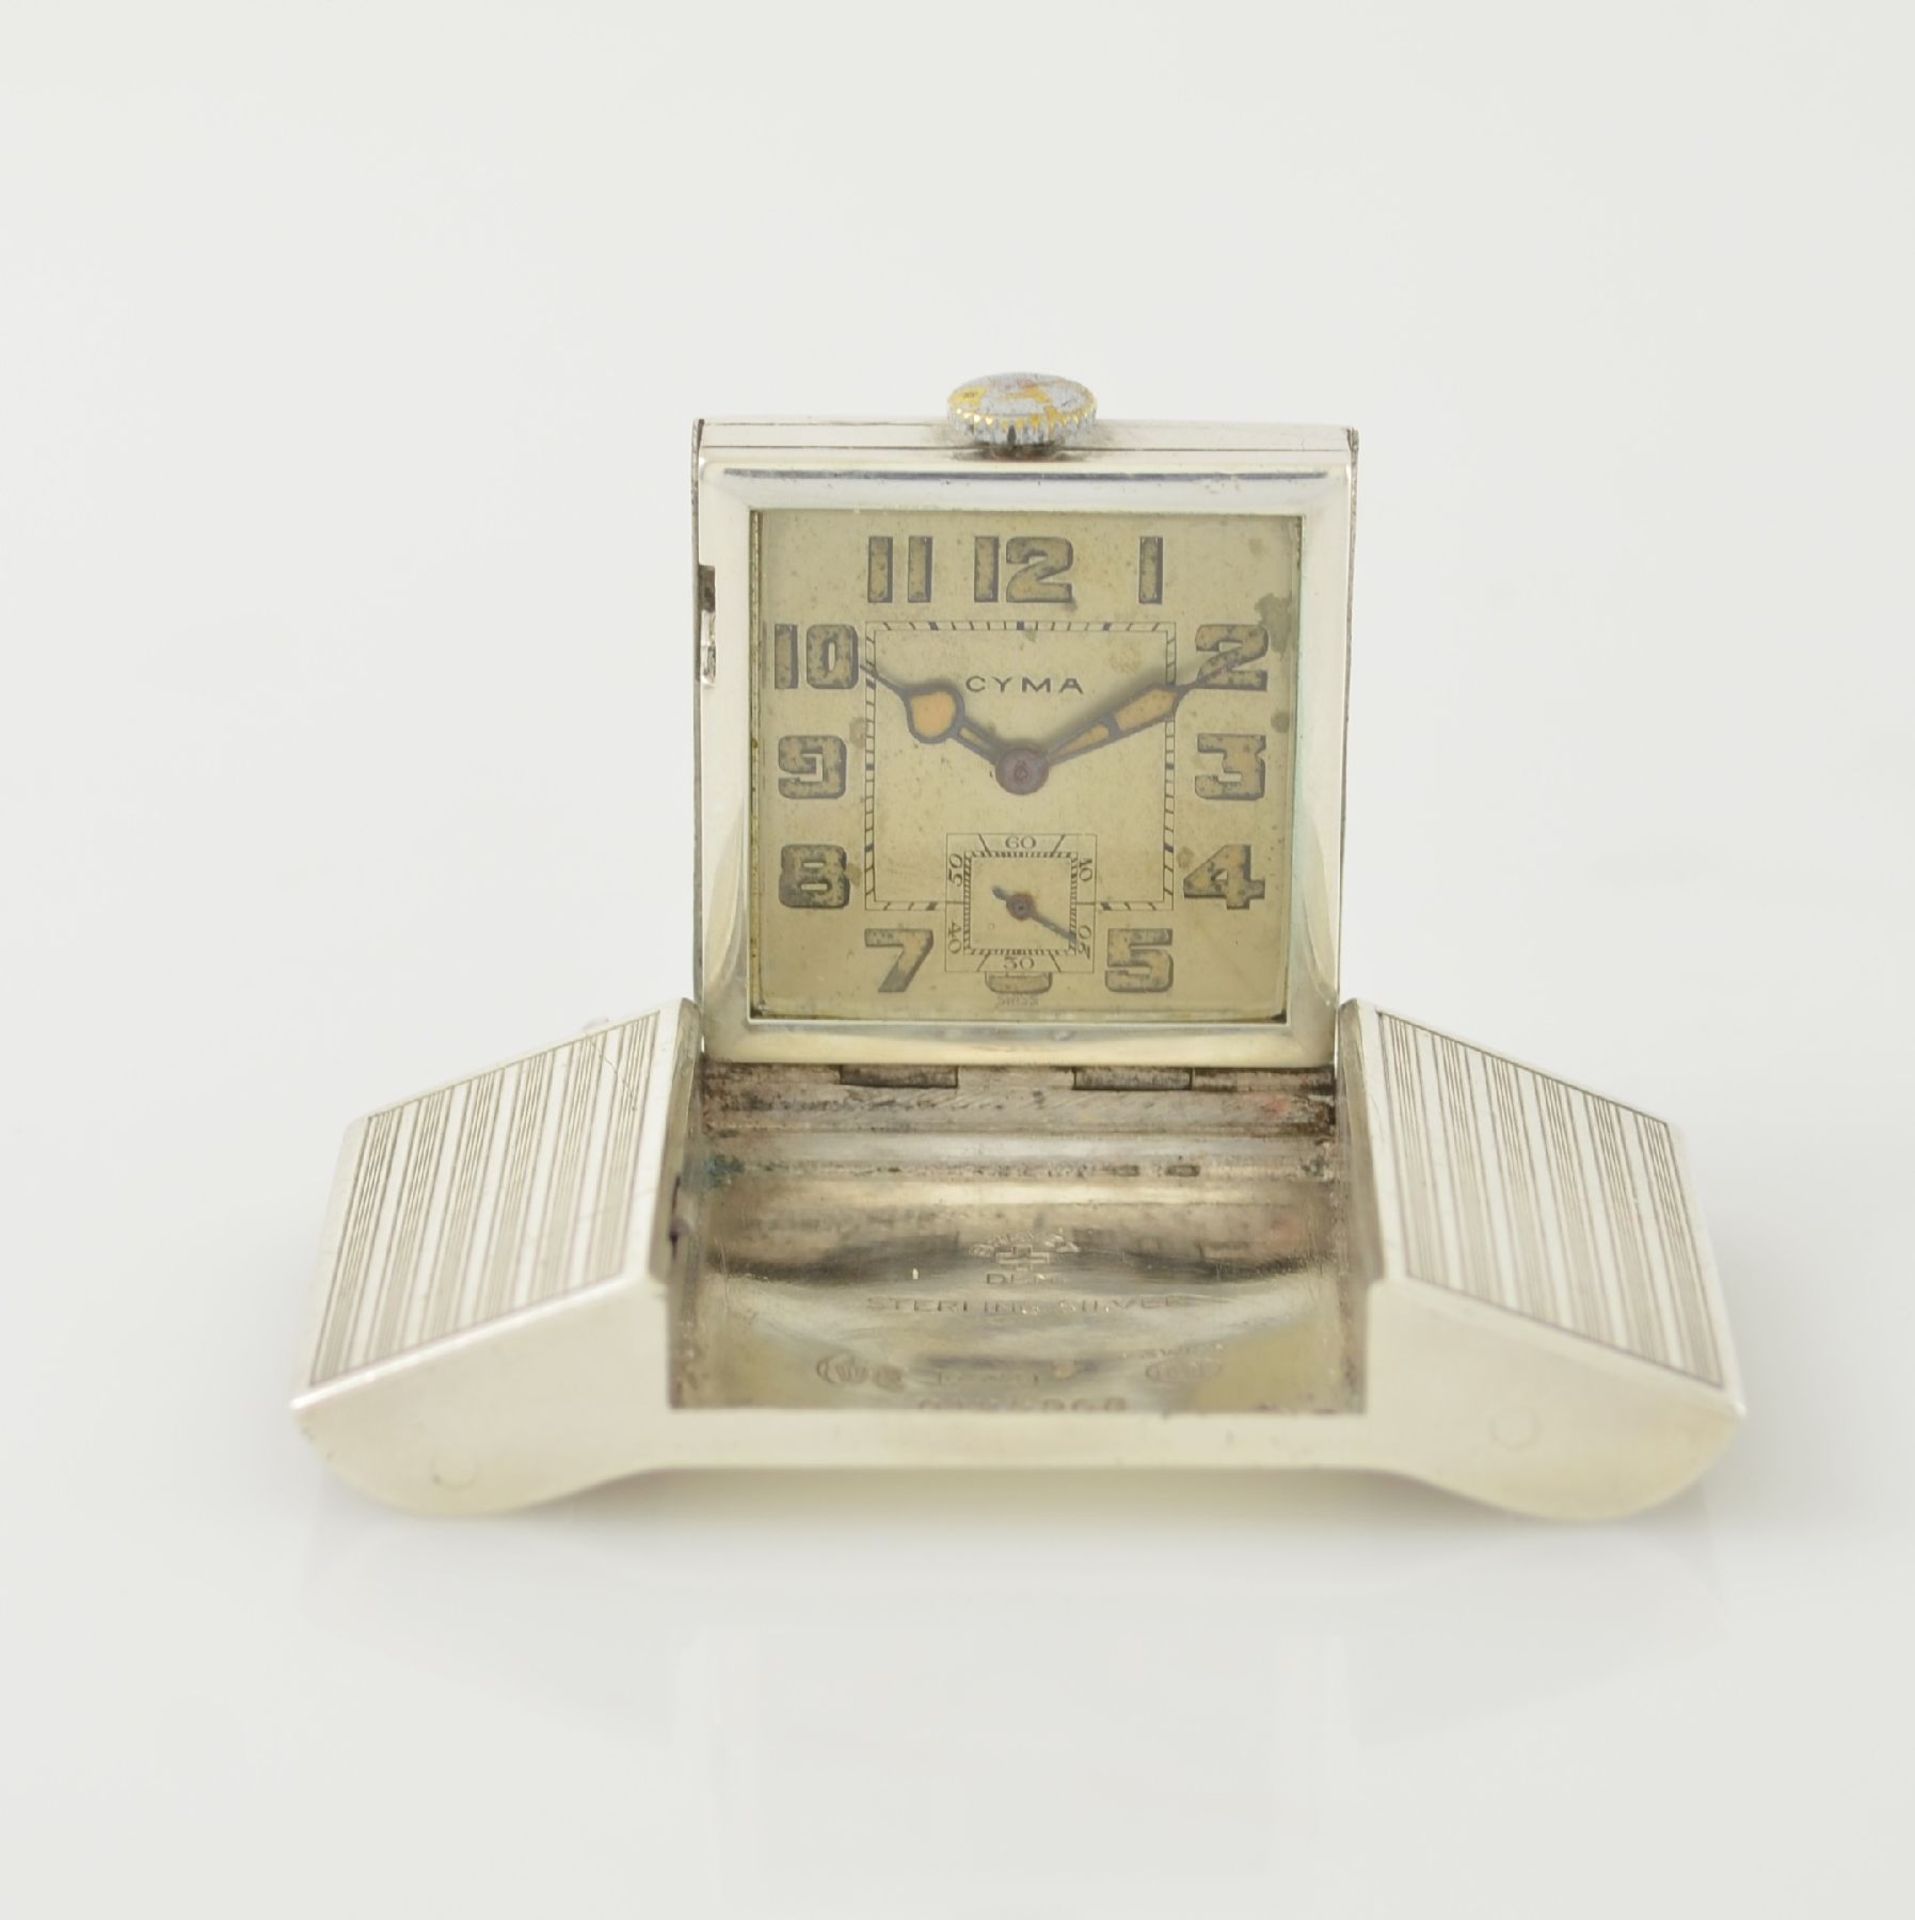 CYMA Gürtelschnalle in Sterlingsilber mit ausklappbarer Uhr, Schweiz um 1930, Handaufzug, 3-teil.